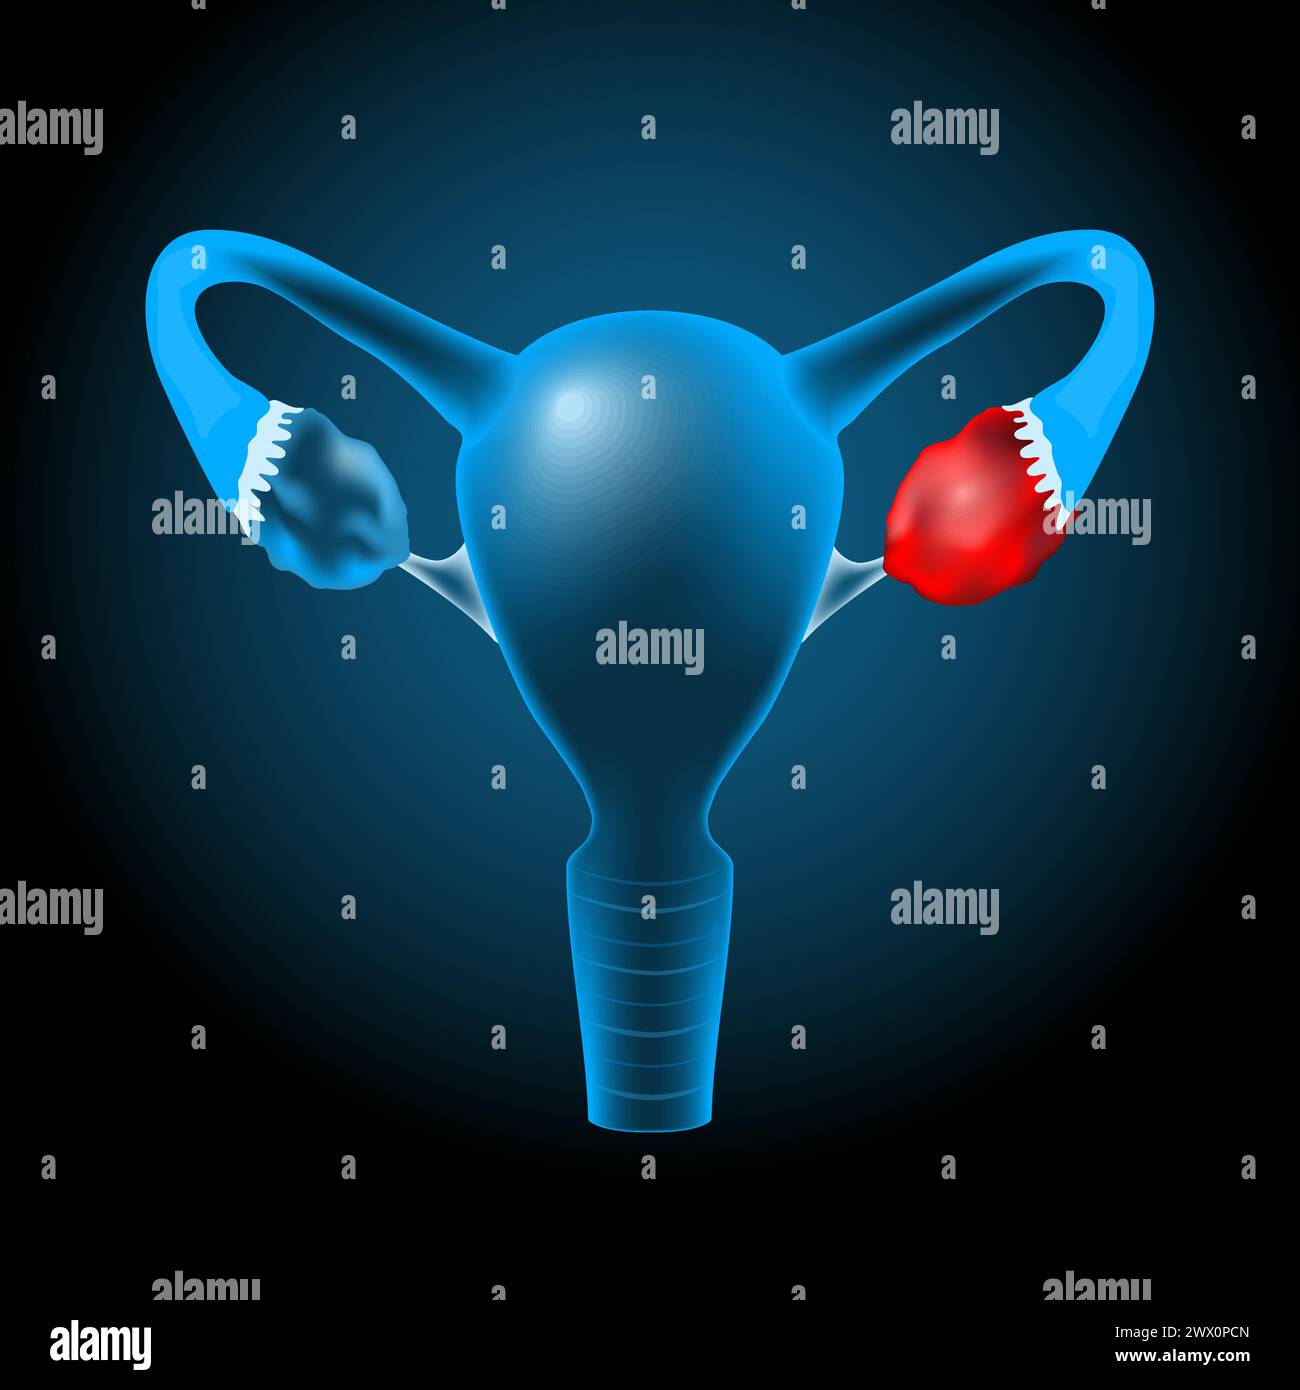 Utérus humain bleu transparent réaliste avec effet lumineux sur fond sombre. Kyste ovarien ou tumeur qui se produit dans l'ovaire. Illustration vectorielle Li Illustration de Vecteur